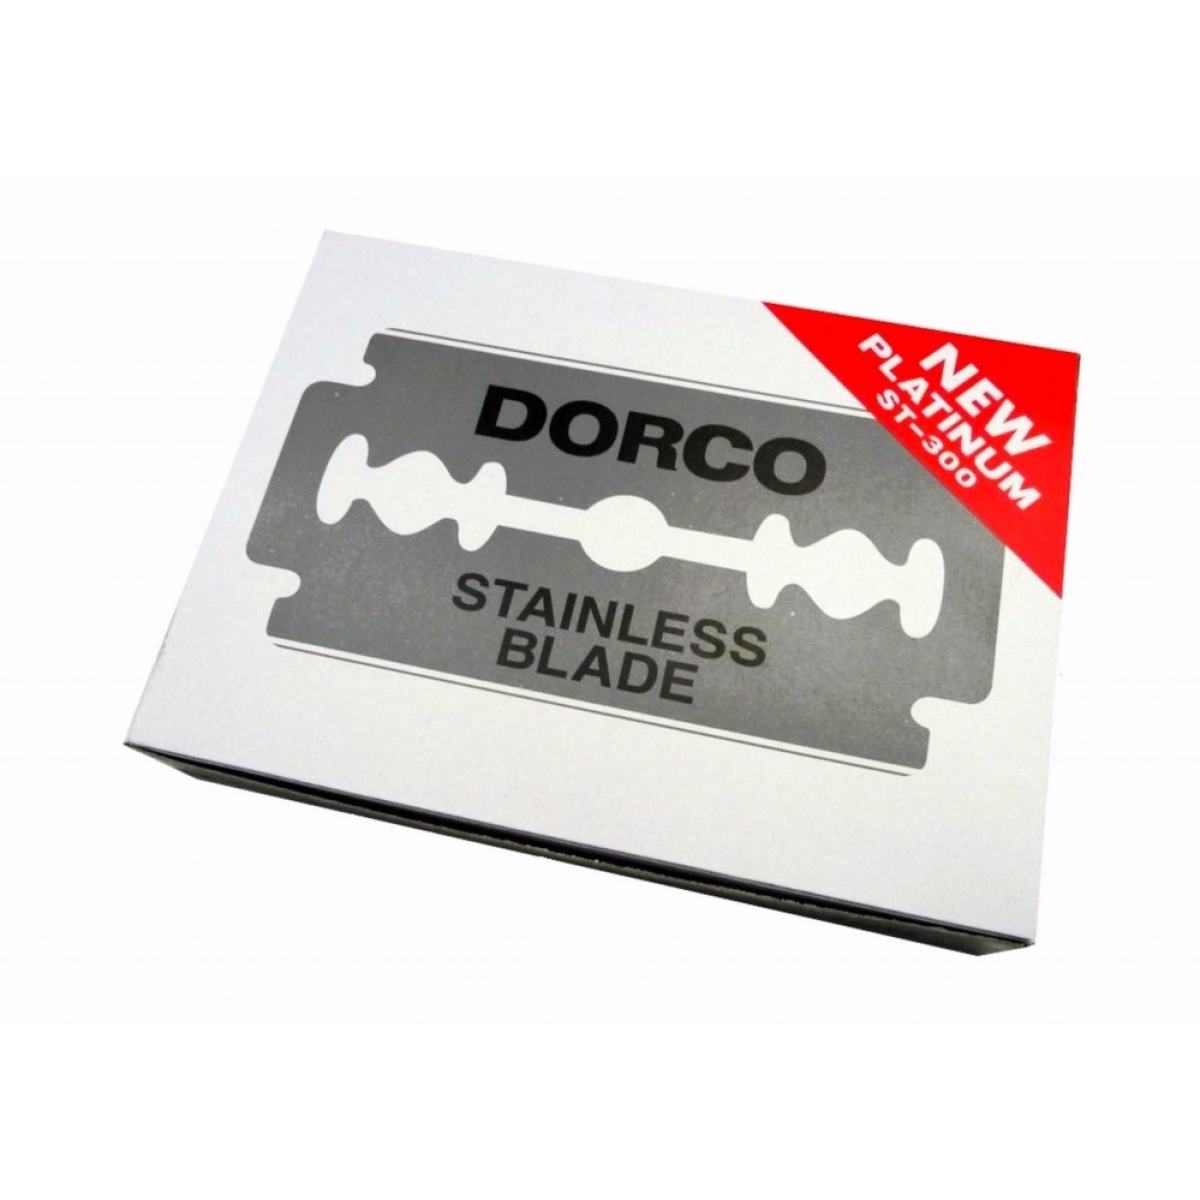 ใบมีดโกน ยี่ห้อ DORCO มีดโกนหนวด 2 คม Dorco Stainless Blade ตราดอร์โก้ แบบ 100 ใบมีด/กล่อง (รุ่น แพททินั่ม ST-300)